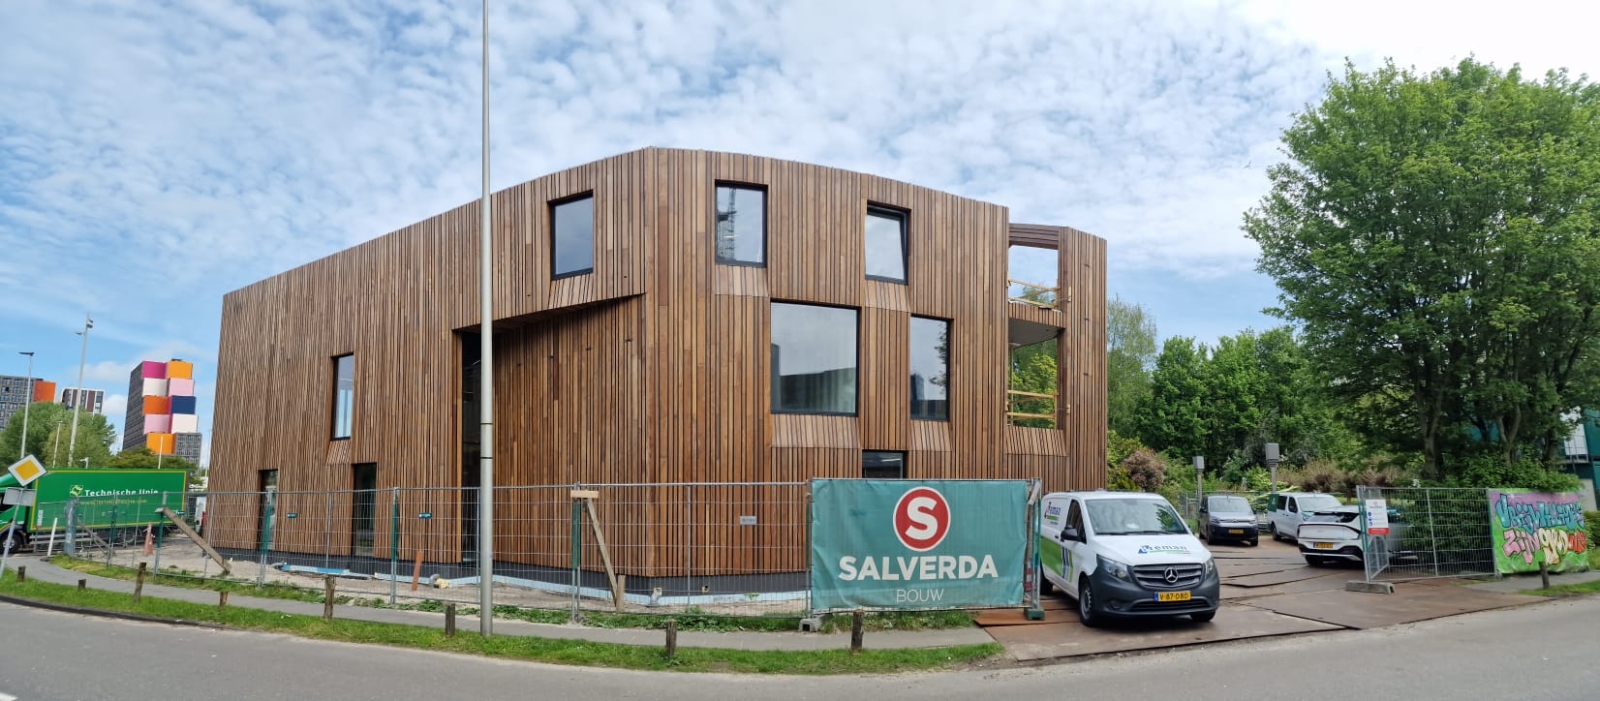 Ronald McDonald Maison - Amsterdam (NL) Revêtement de mur en bois Afrormosia